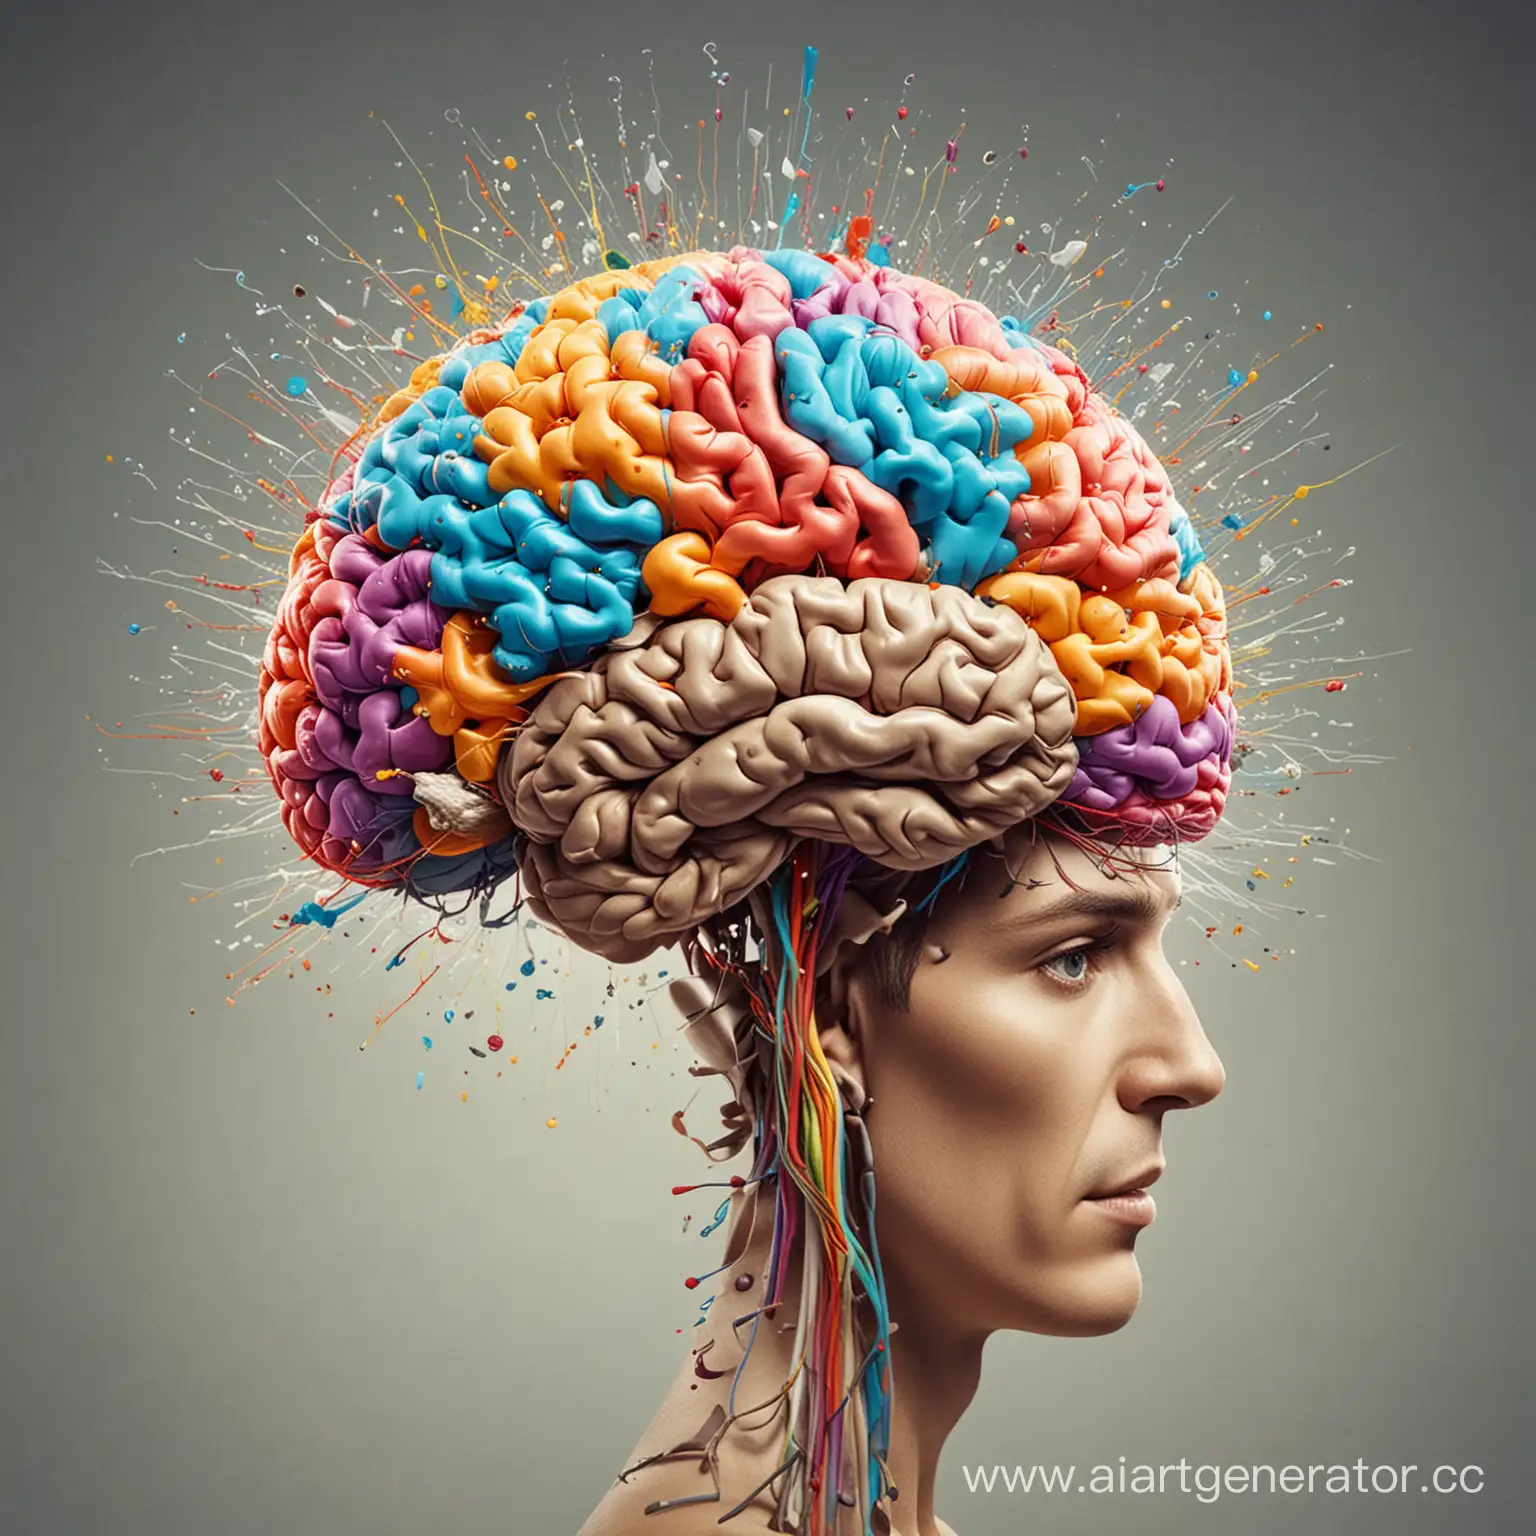 Каждый день наш мозг производит около 70 000 мыслей. 